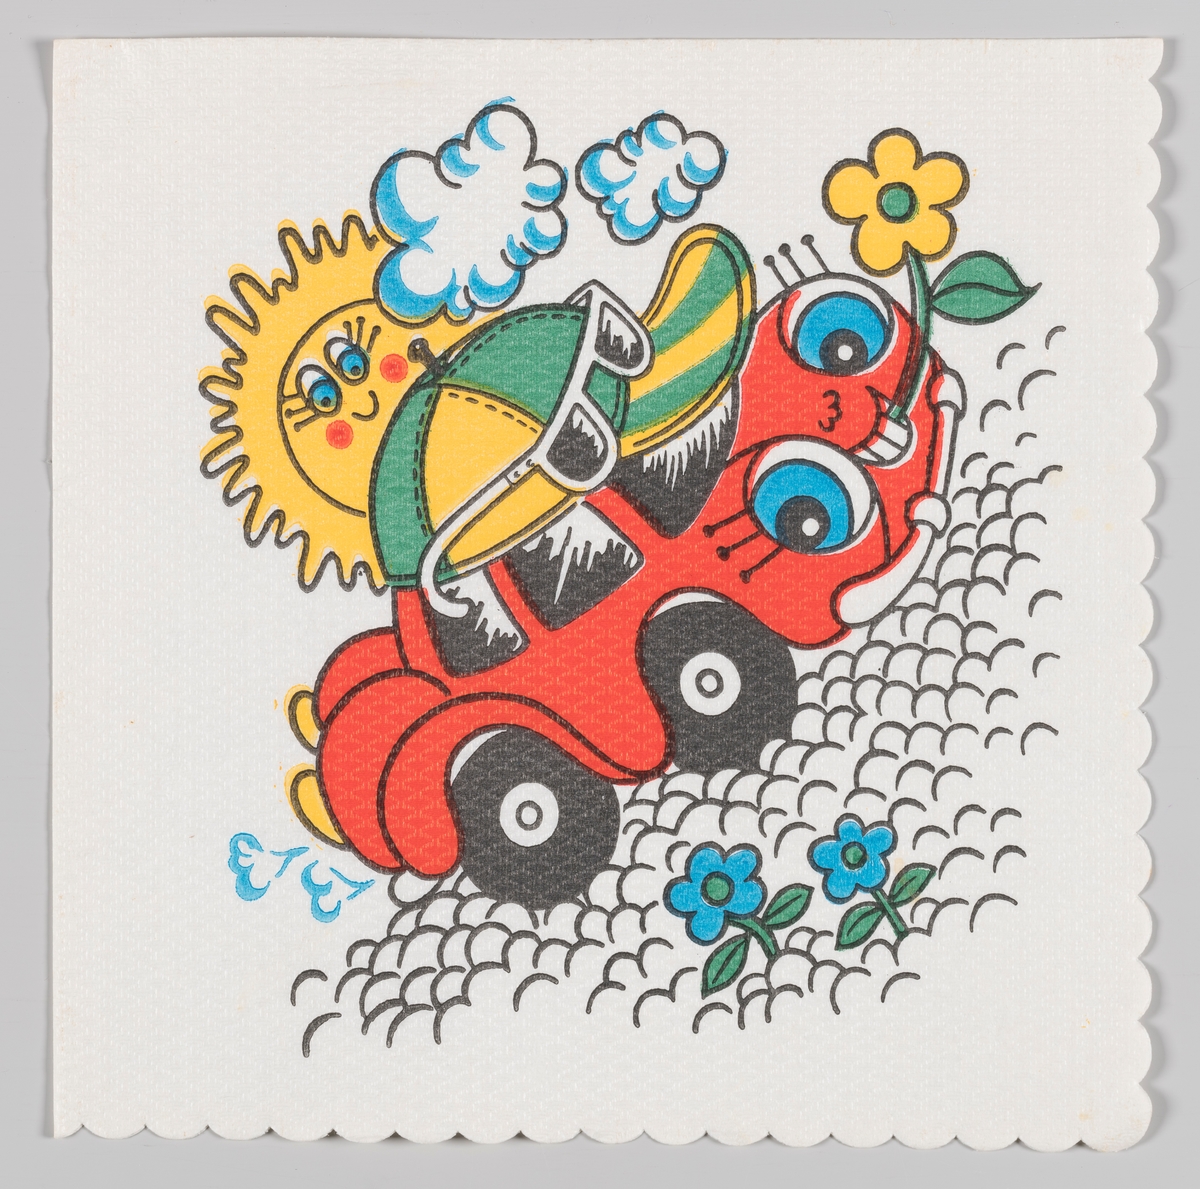 En smilende rød bil med caps og solbriller holder en blomst mellom tennene sine. Bilen kjører på en steinete vei og en smilende sol ses bak skyene.

Samme motiv som på serviett MIA.00007-003-0066.